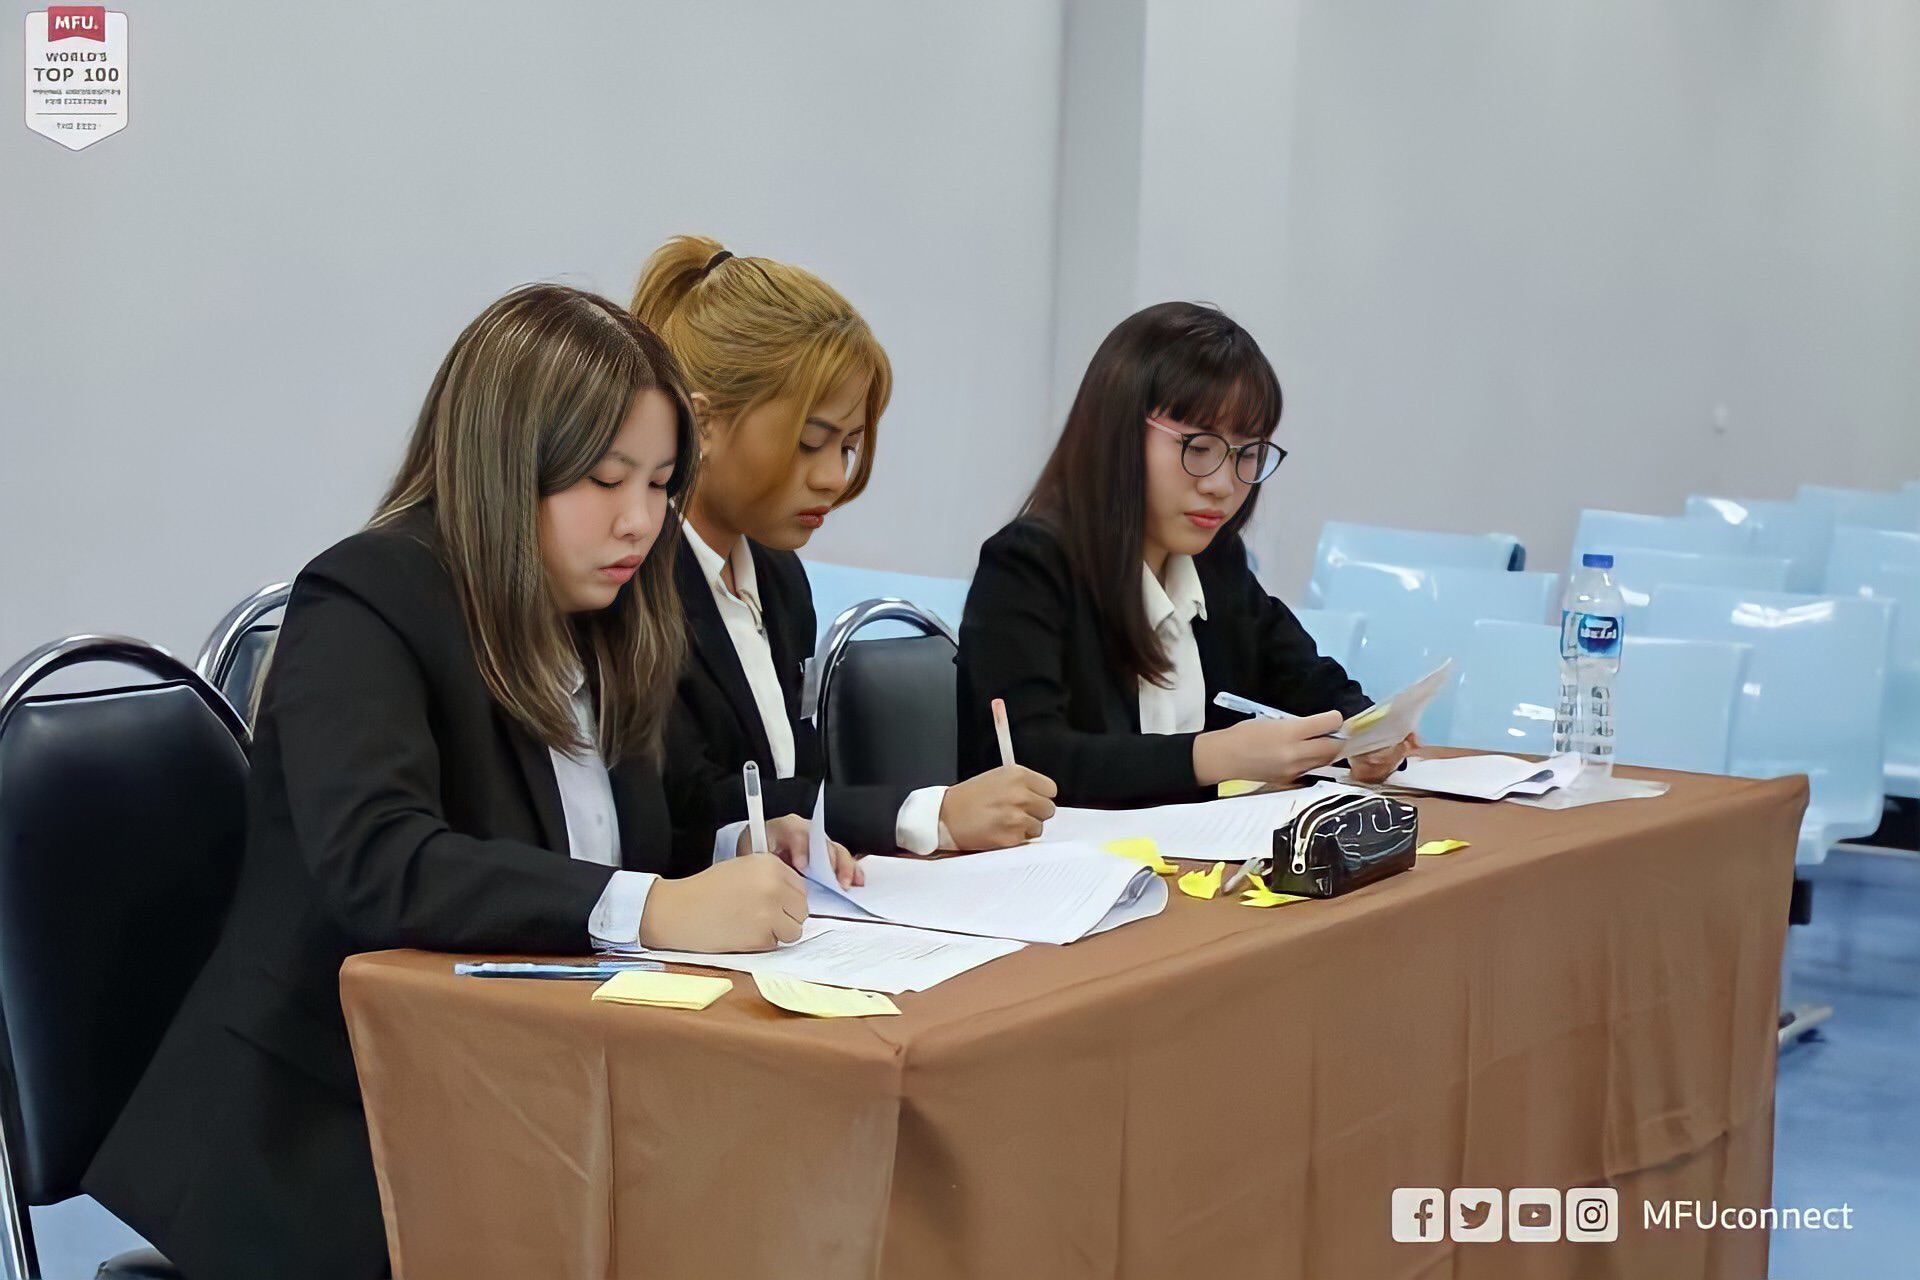 EP.45: [คุยกับนักศึกษากฎหมาย] คุยกับนักศึกษาคณะนิติศาสตร์ ศูนย์รังสิต เกี่ยวกับประสบการณ์เข้าร่วมการแข่งขันทบาทสมมติและการแข่งขันว่าความในกฎหมายมนุษยธรรมระหว่างประเทศ ภาคภาษาไทย